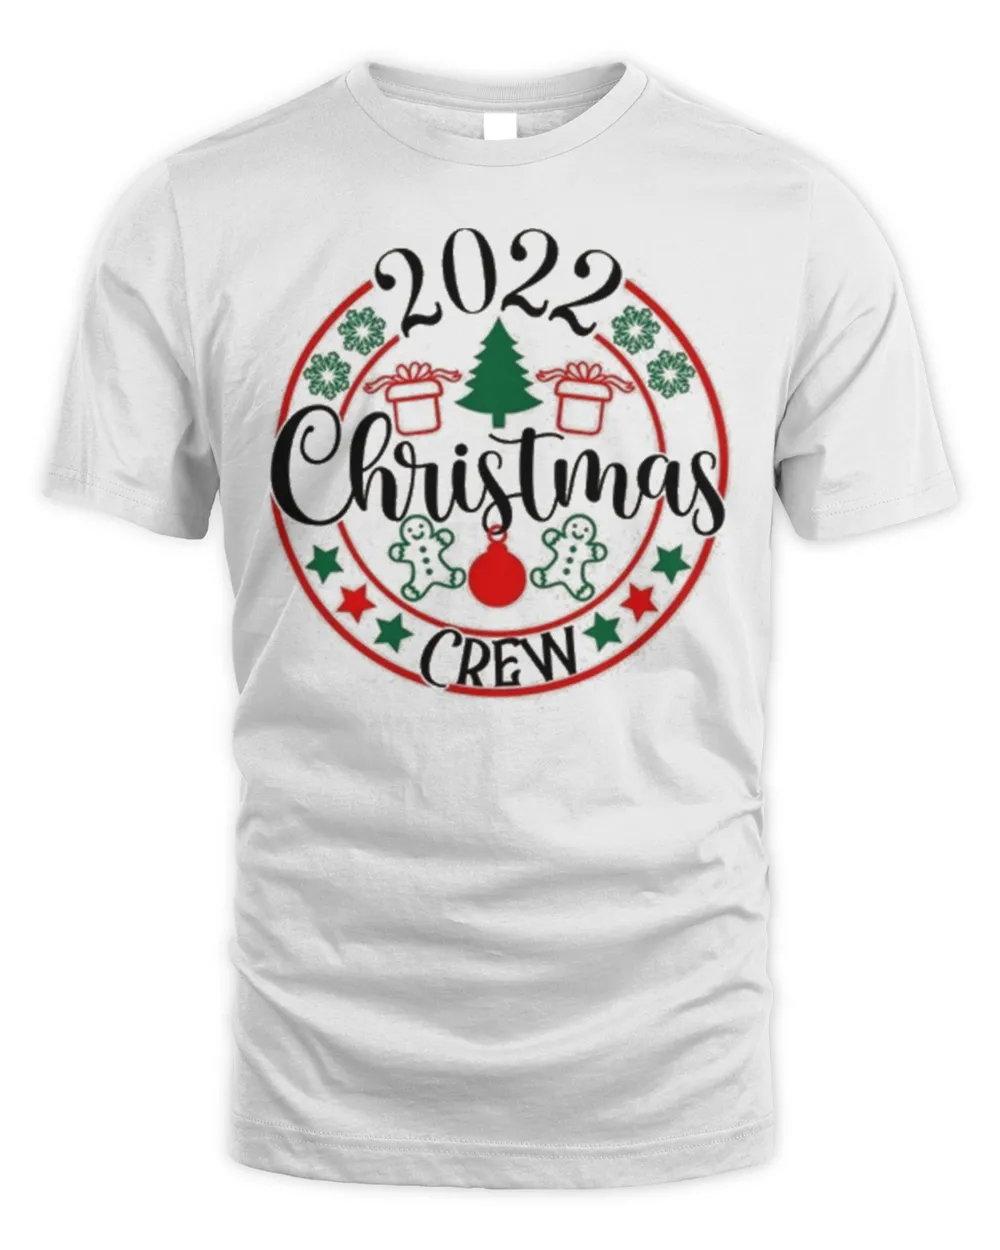 2022 Christmas Crew Shirt